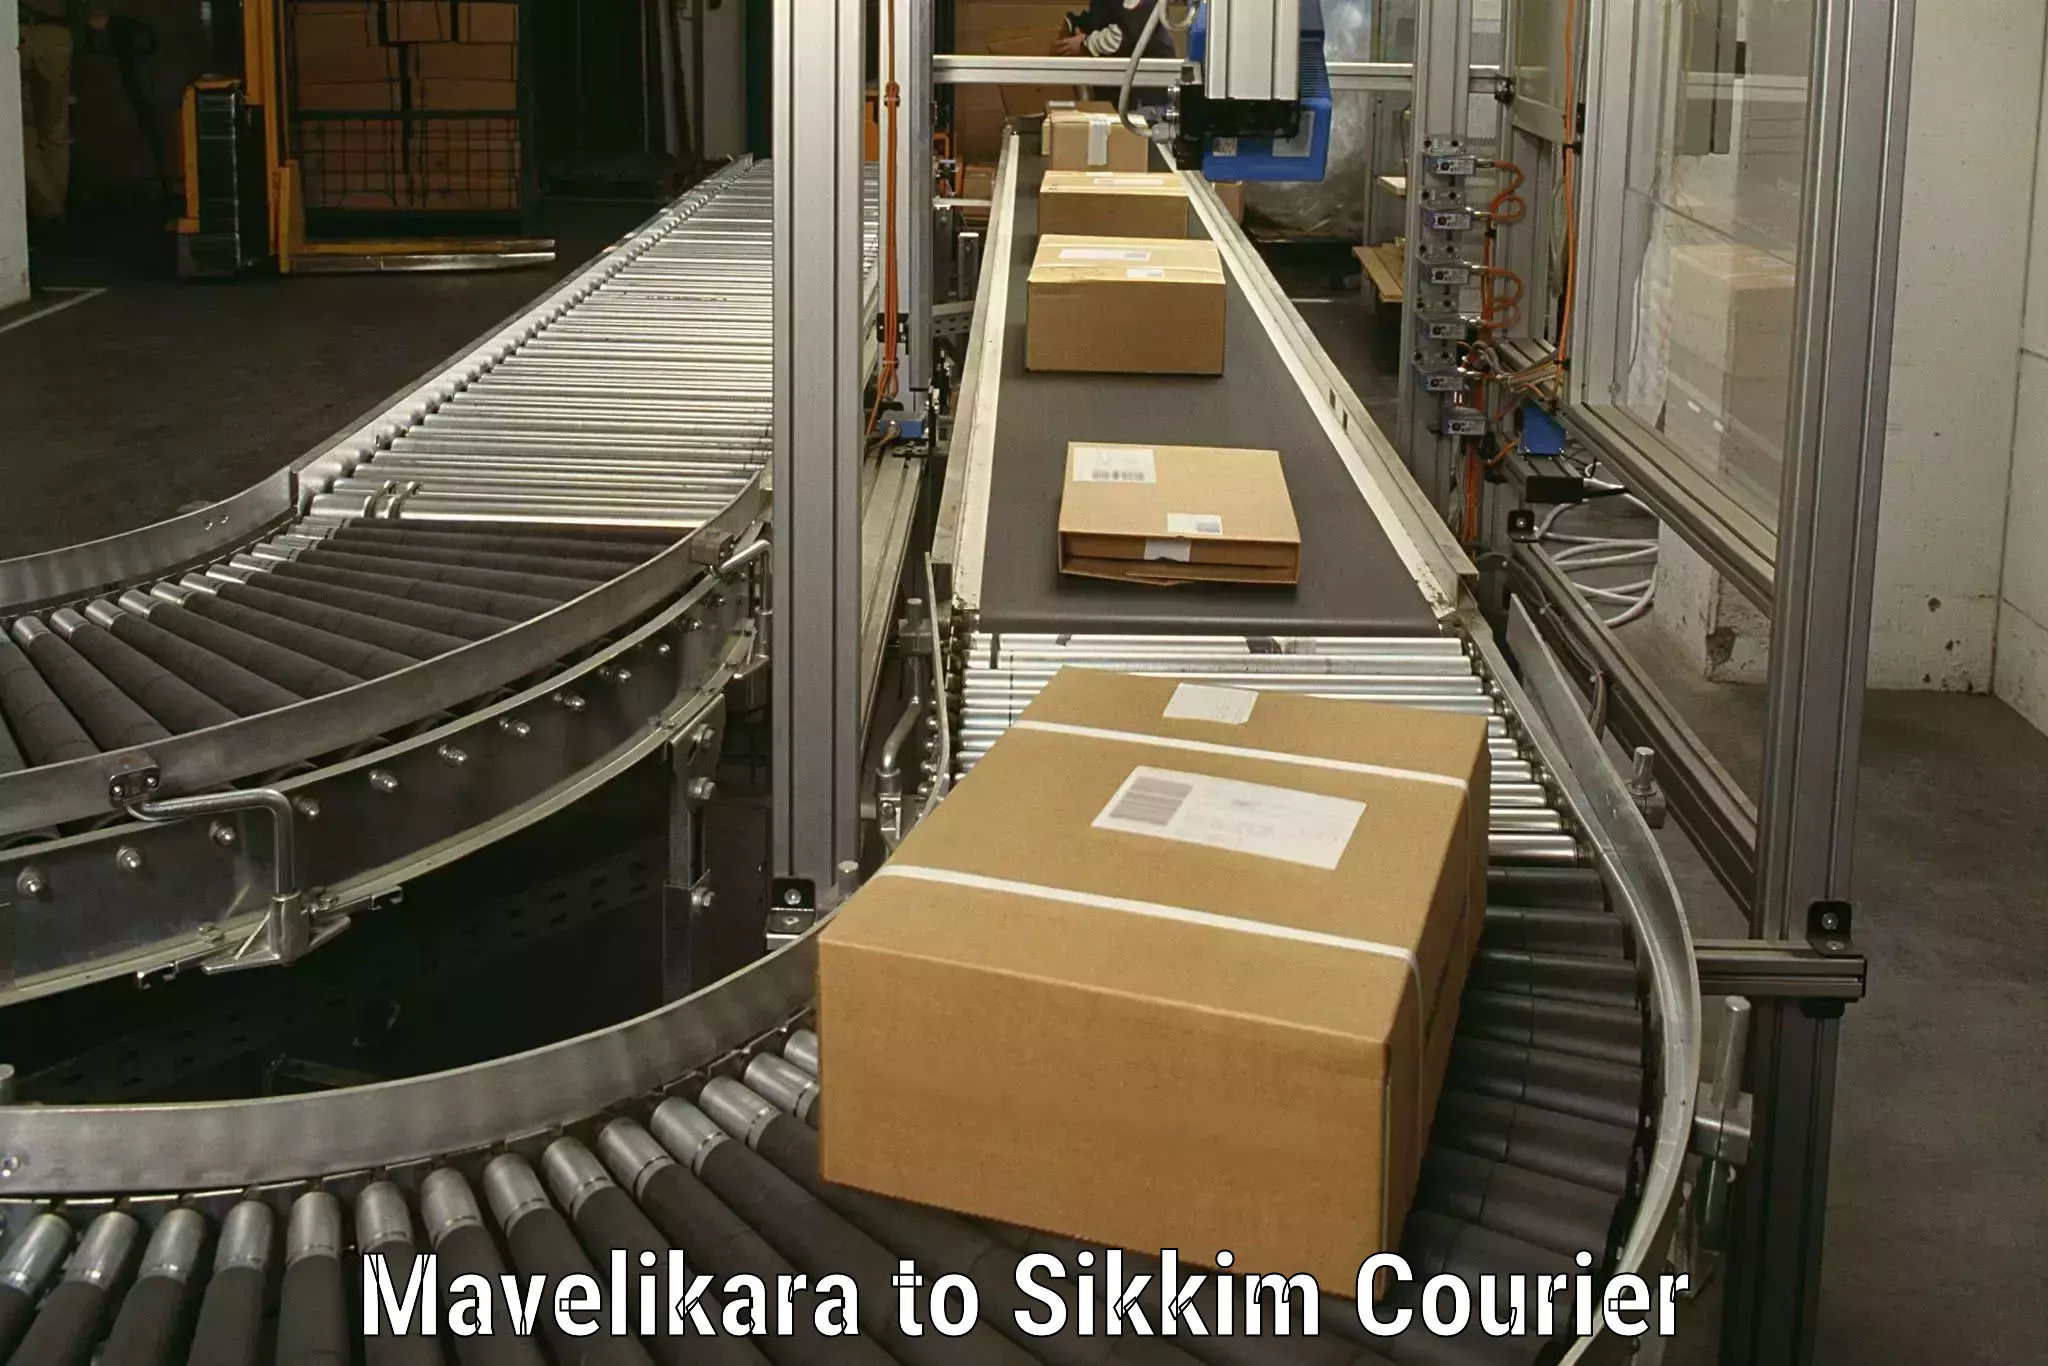 Professional moving company Mavelikara to Rangpo